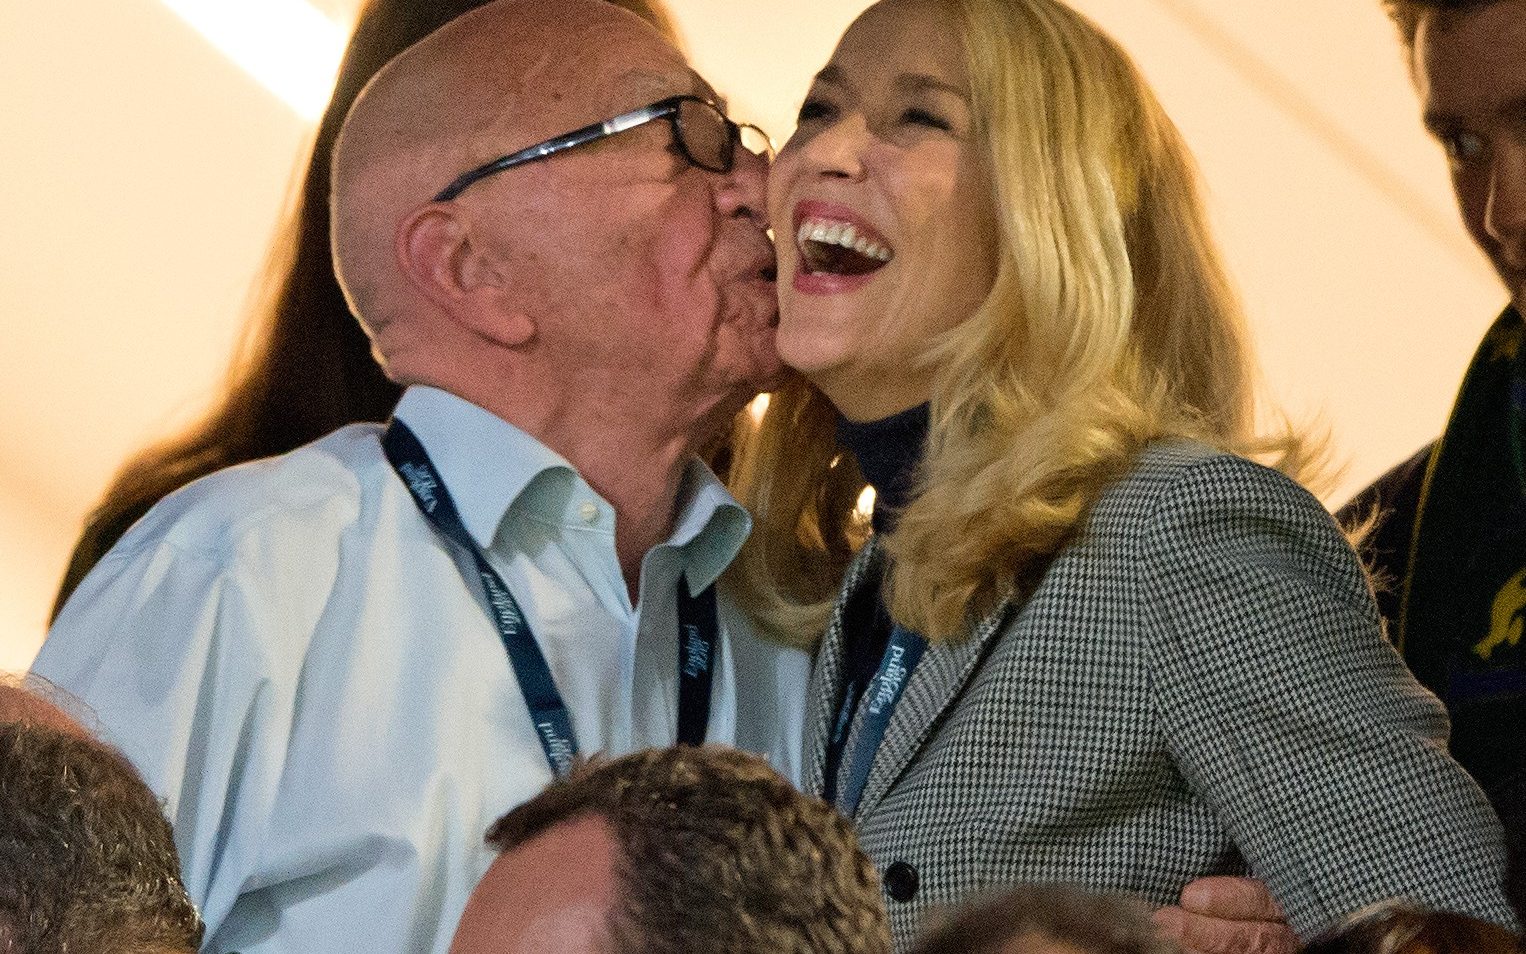 92-year-old billionaire Murdoch finds love after fourth divorce